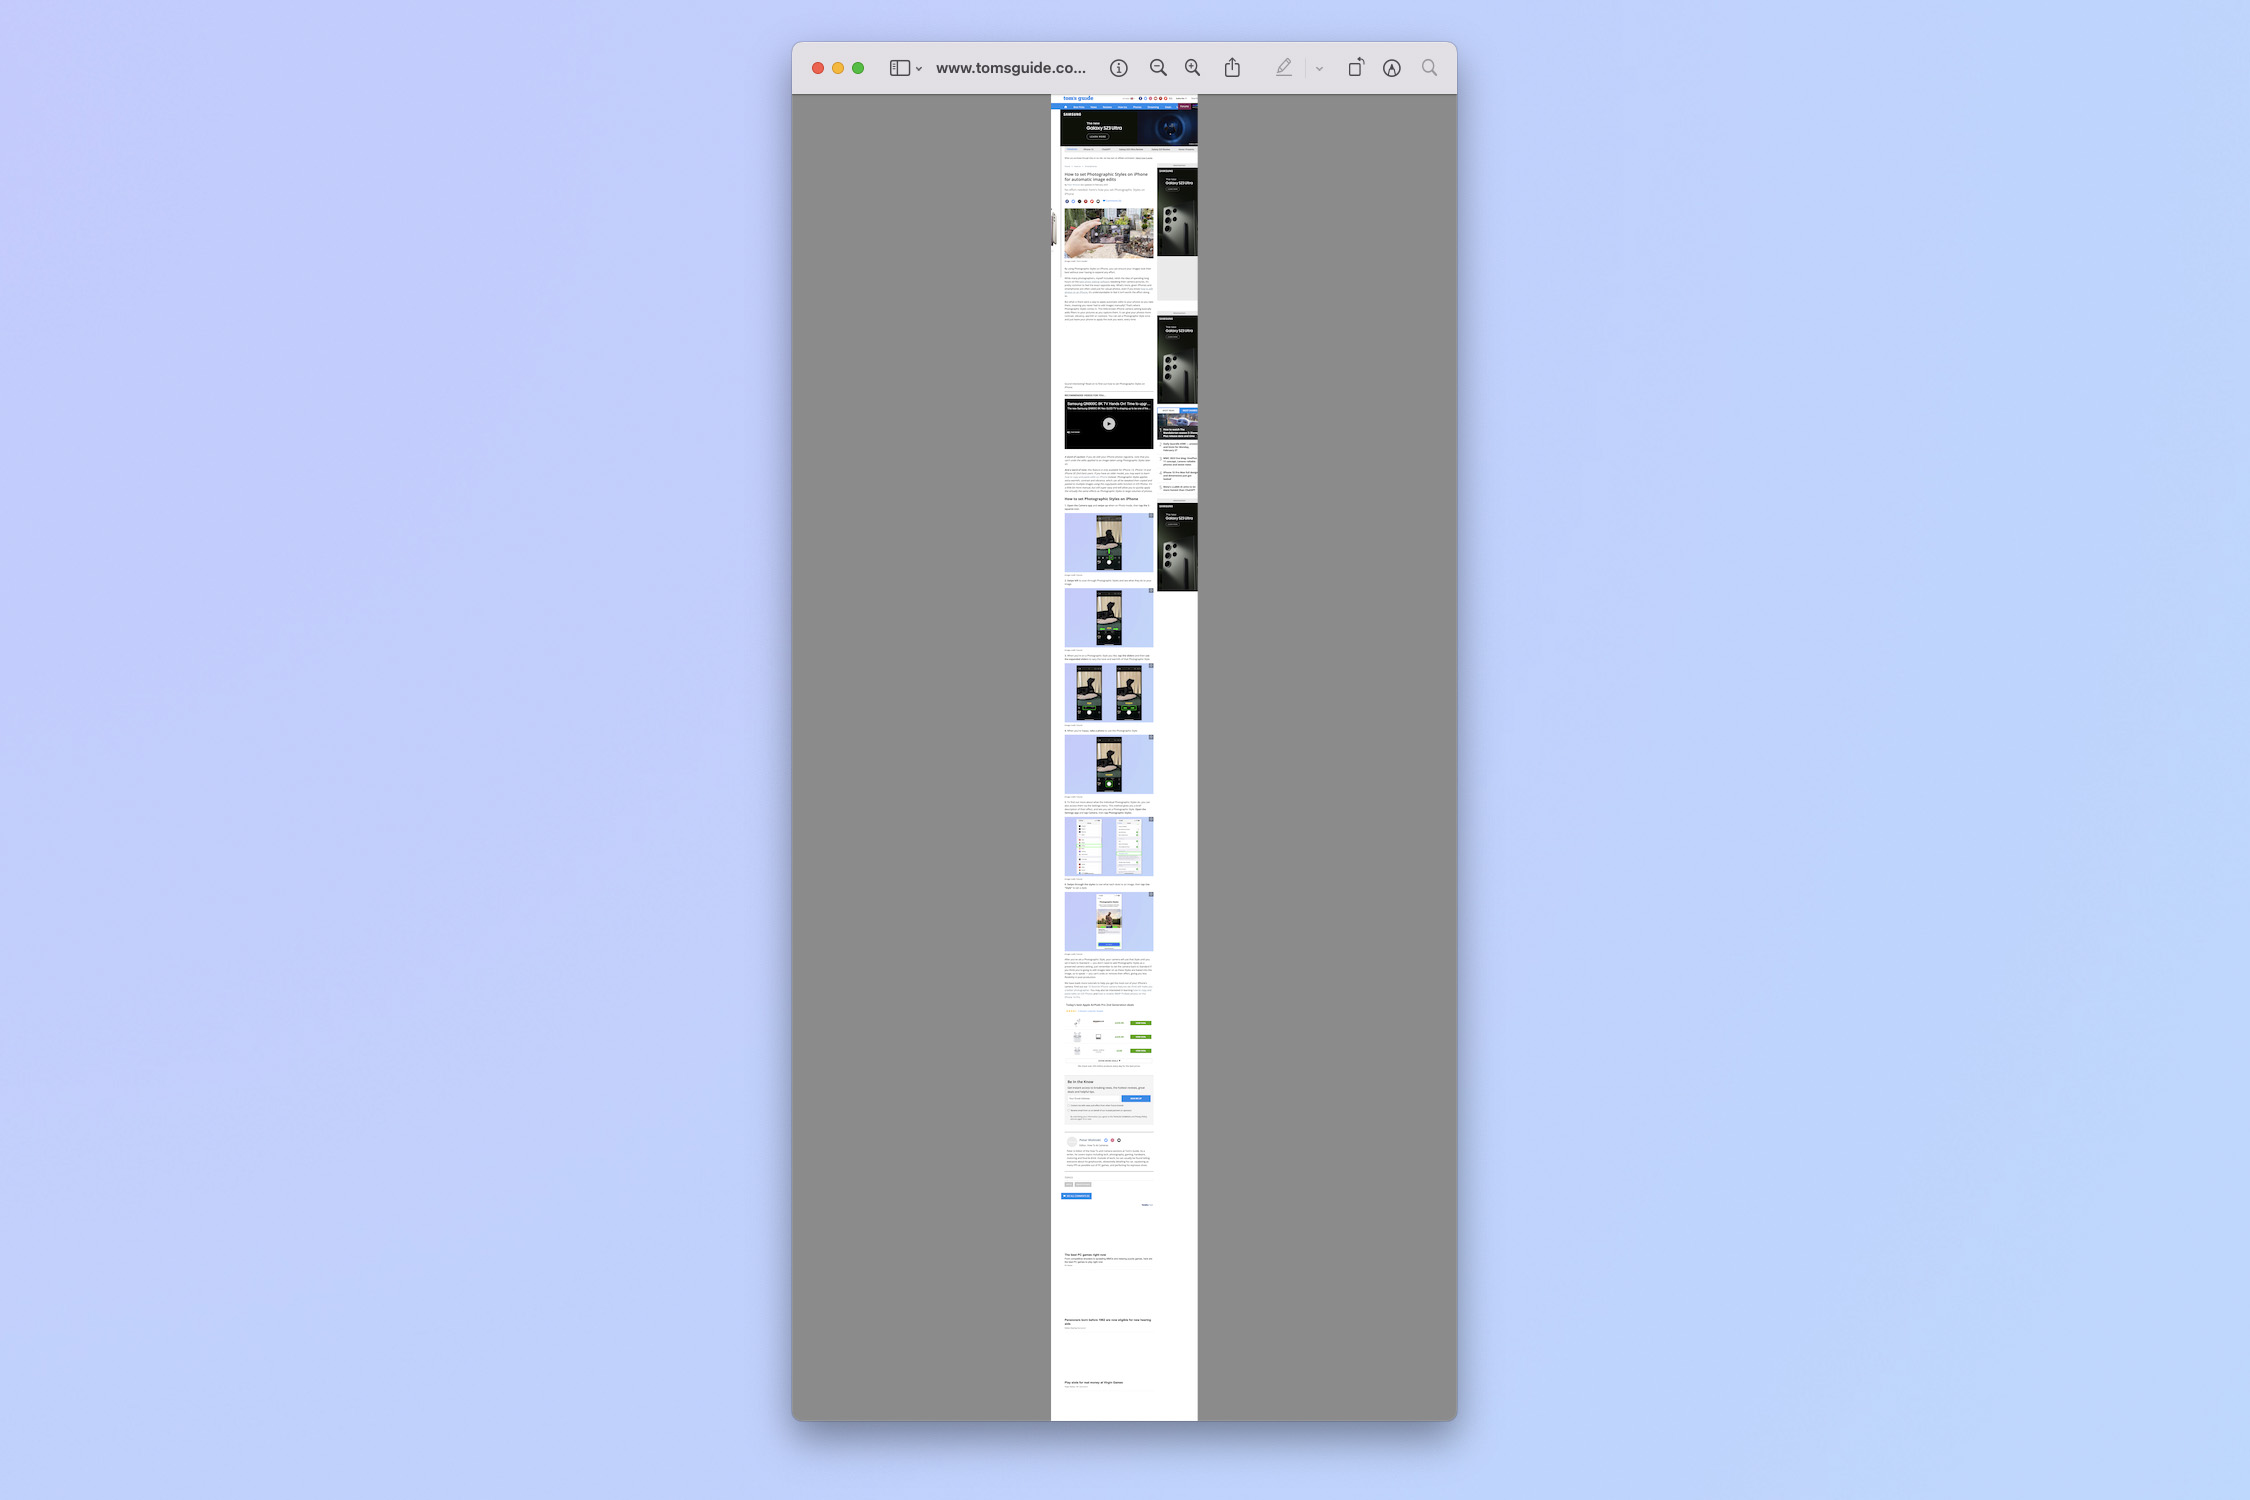 Снимок экрана, показывающий шаги, необходимые для создания скриншота всей страницы в Google Chrome.